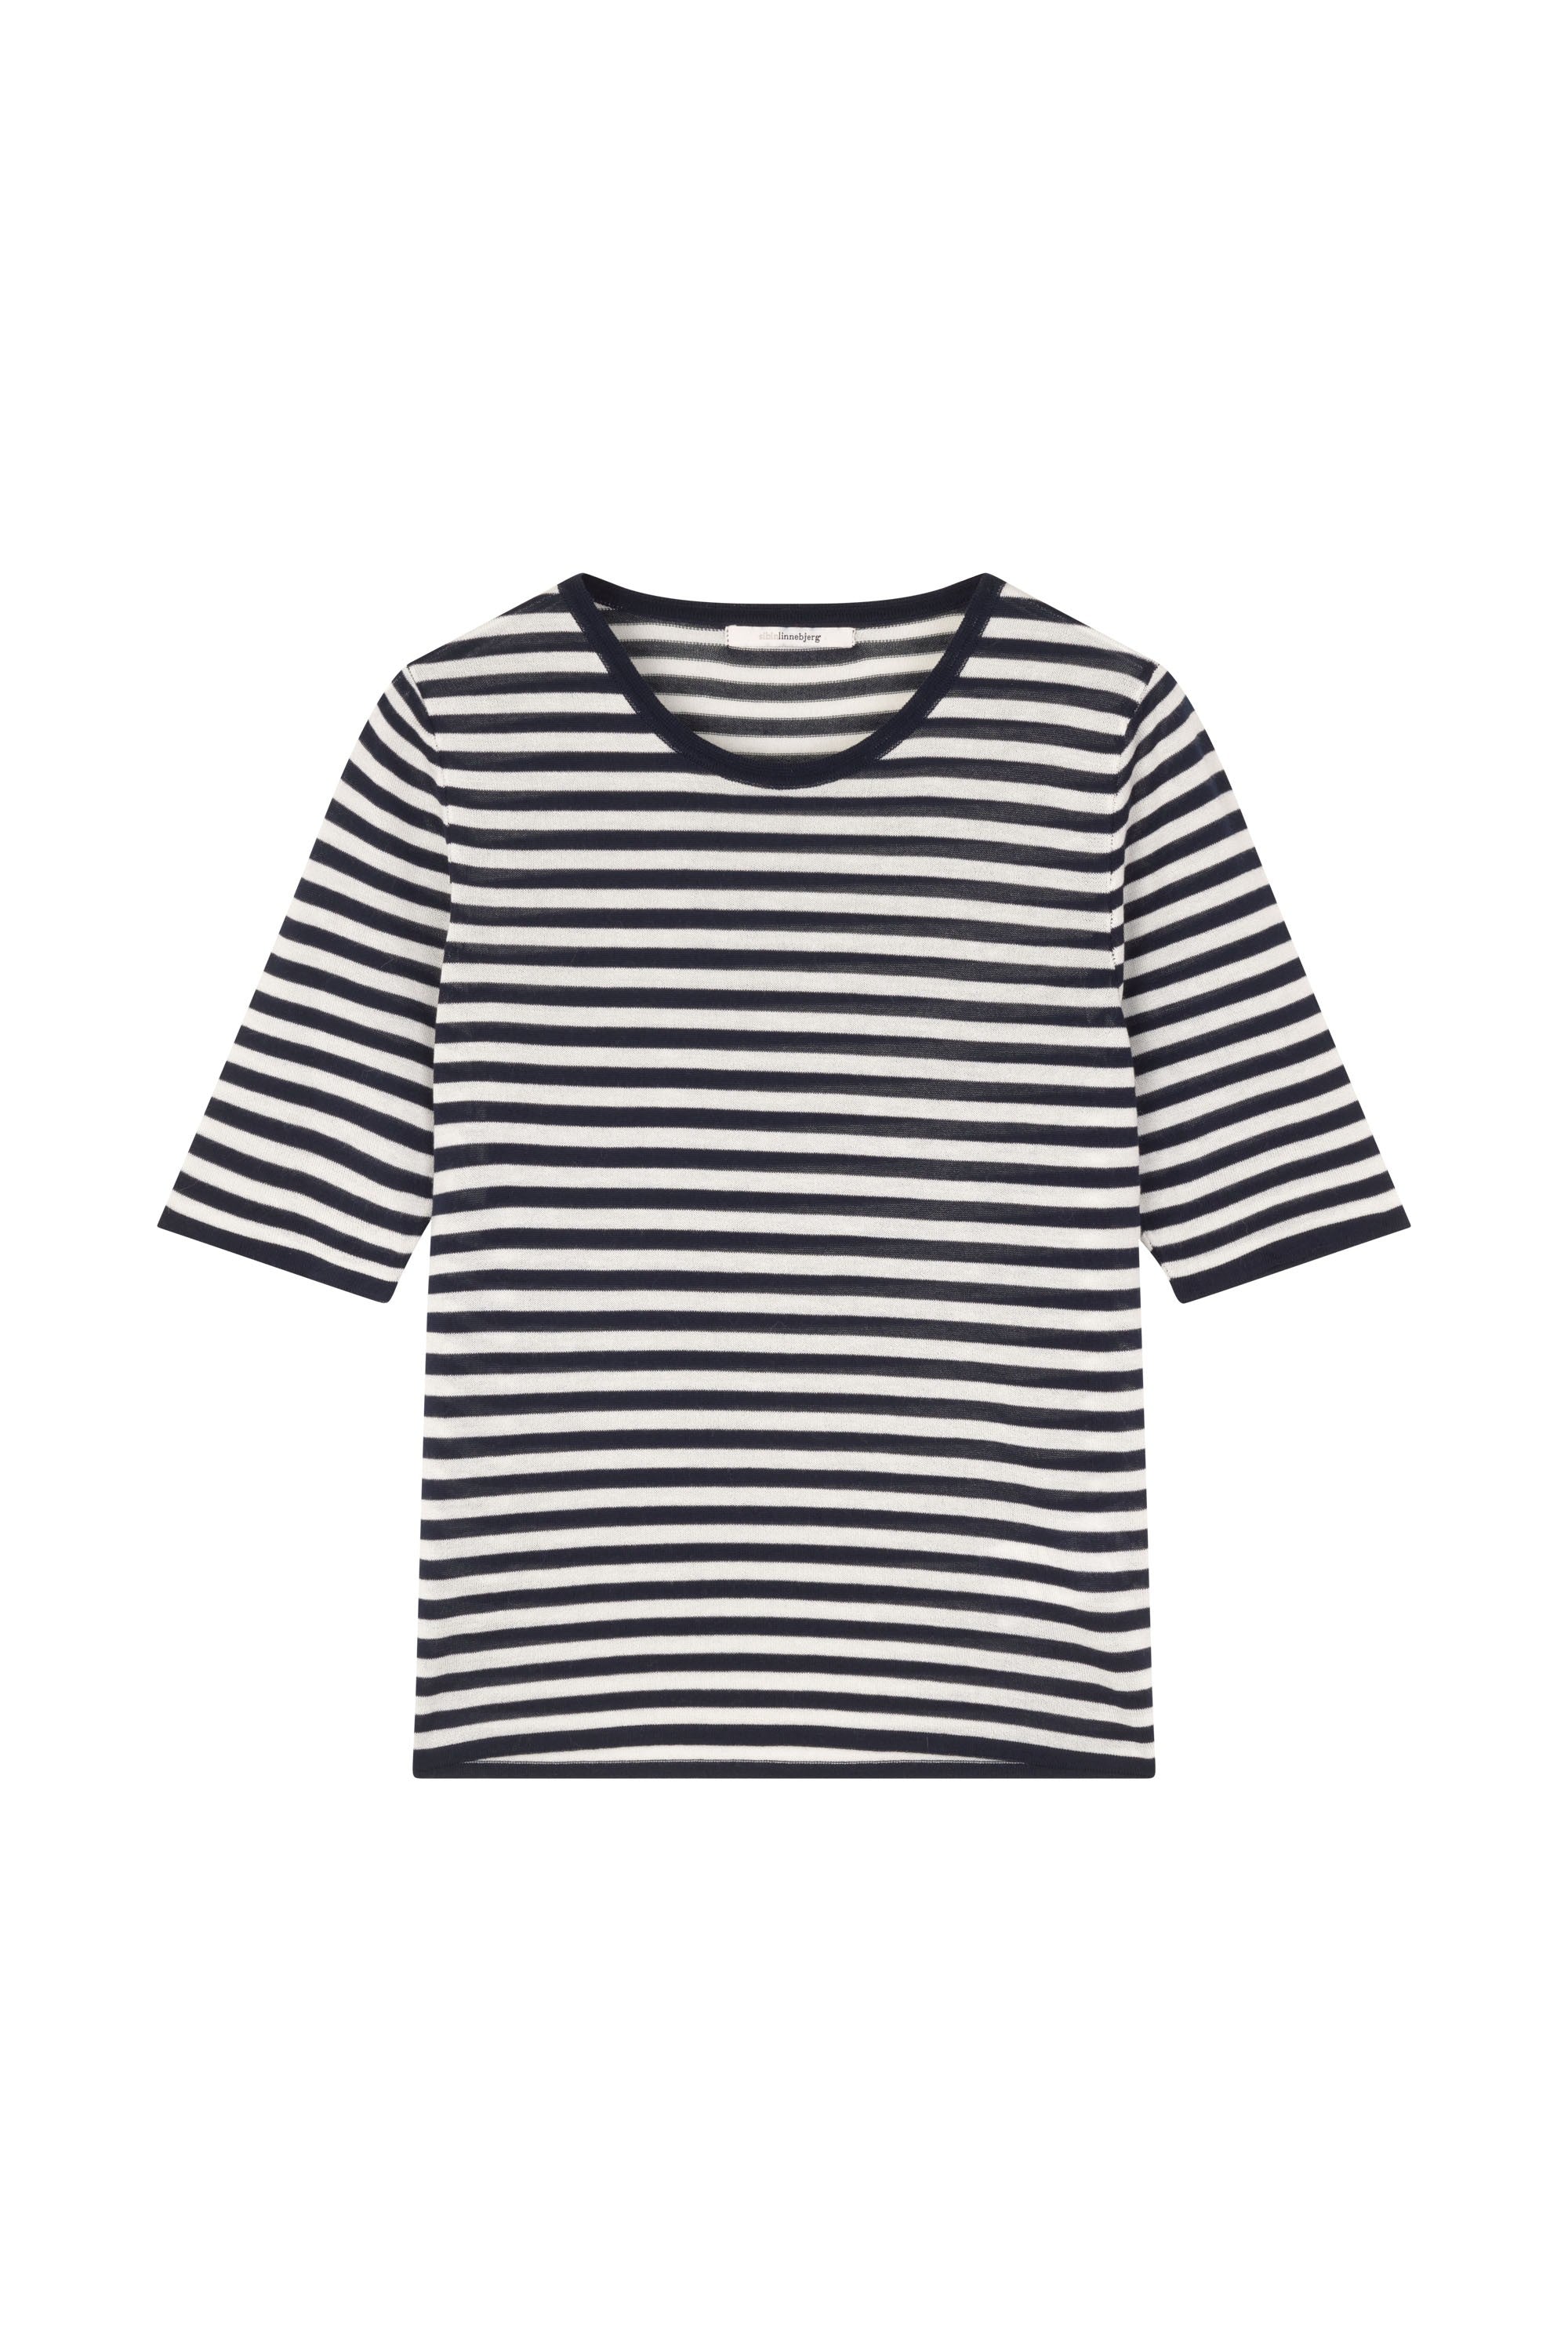 Sibin/Linnebjerg Kristin Striped T-Shirt - Navy / Off-White - RUM Amsterdam